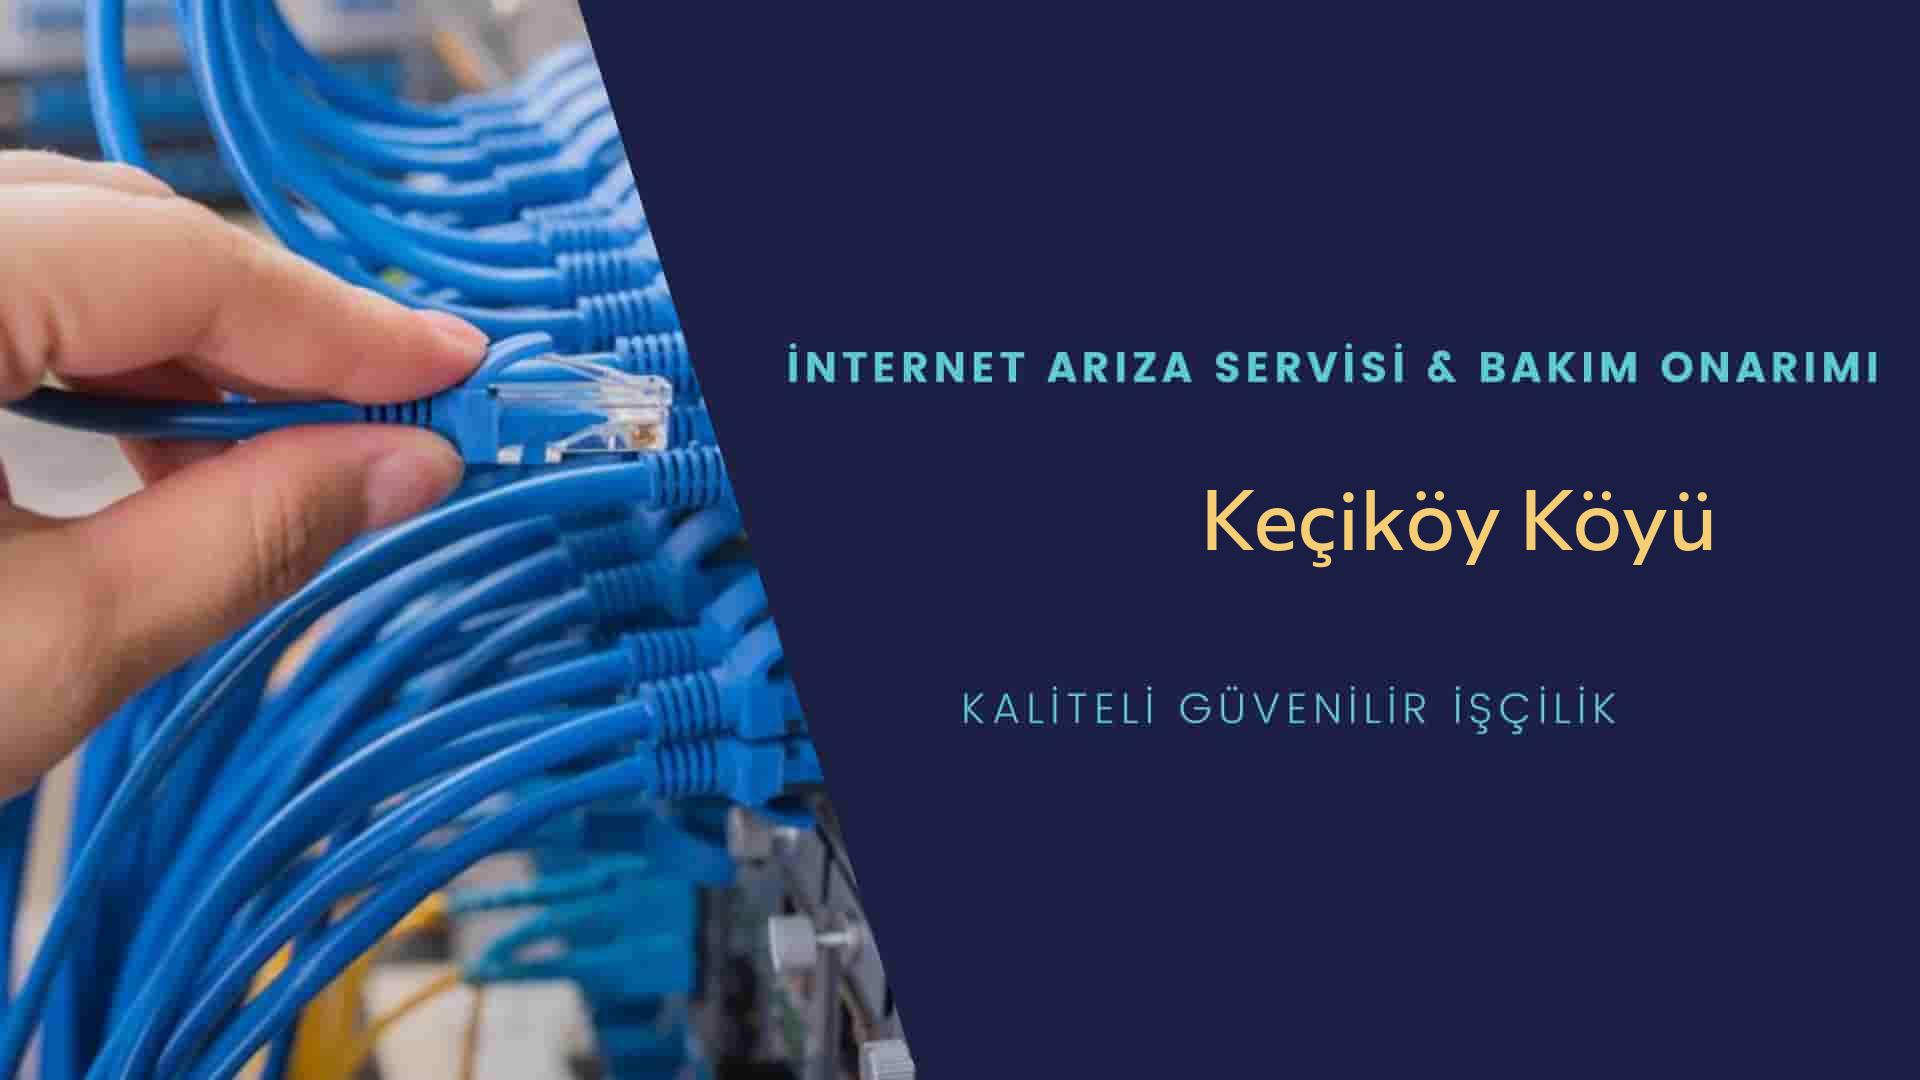 Keçiköy Köyü internet kablosu çekimi yapan yerler veya elektrikçiler mi? arıyorsunuz doğru yerdesiniz o zaman sizlere 7/24 yardımcı olacak profesyonel ustalarımız bir telefon kadar yakındır size.